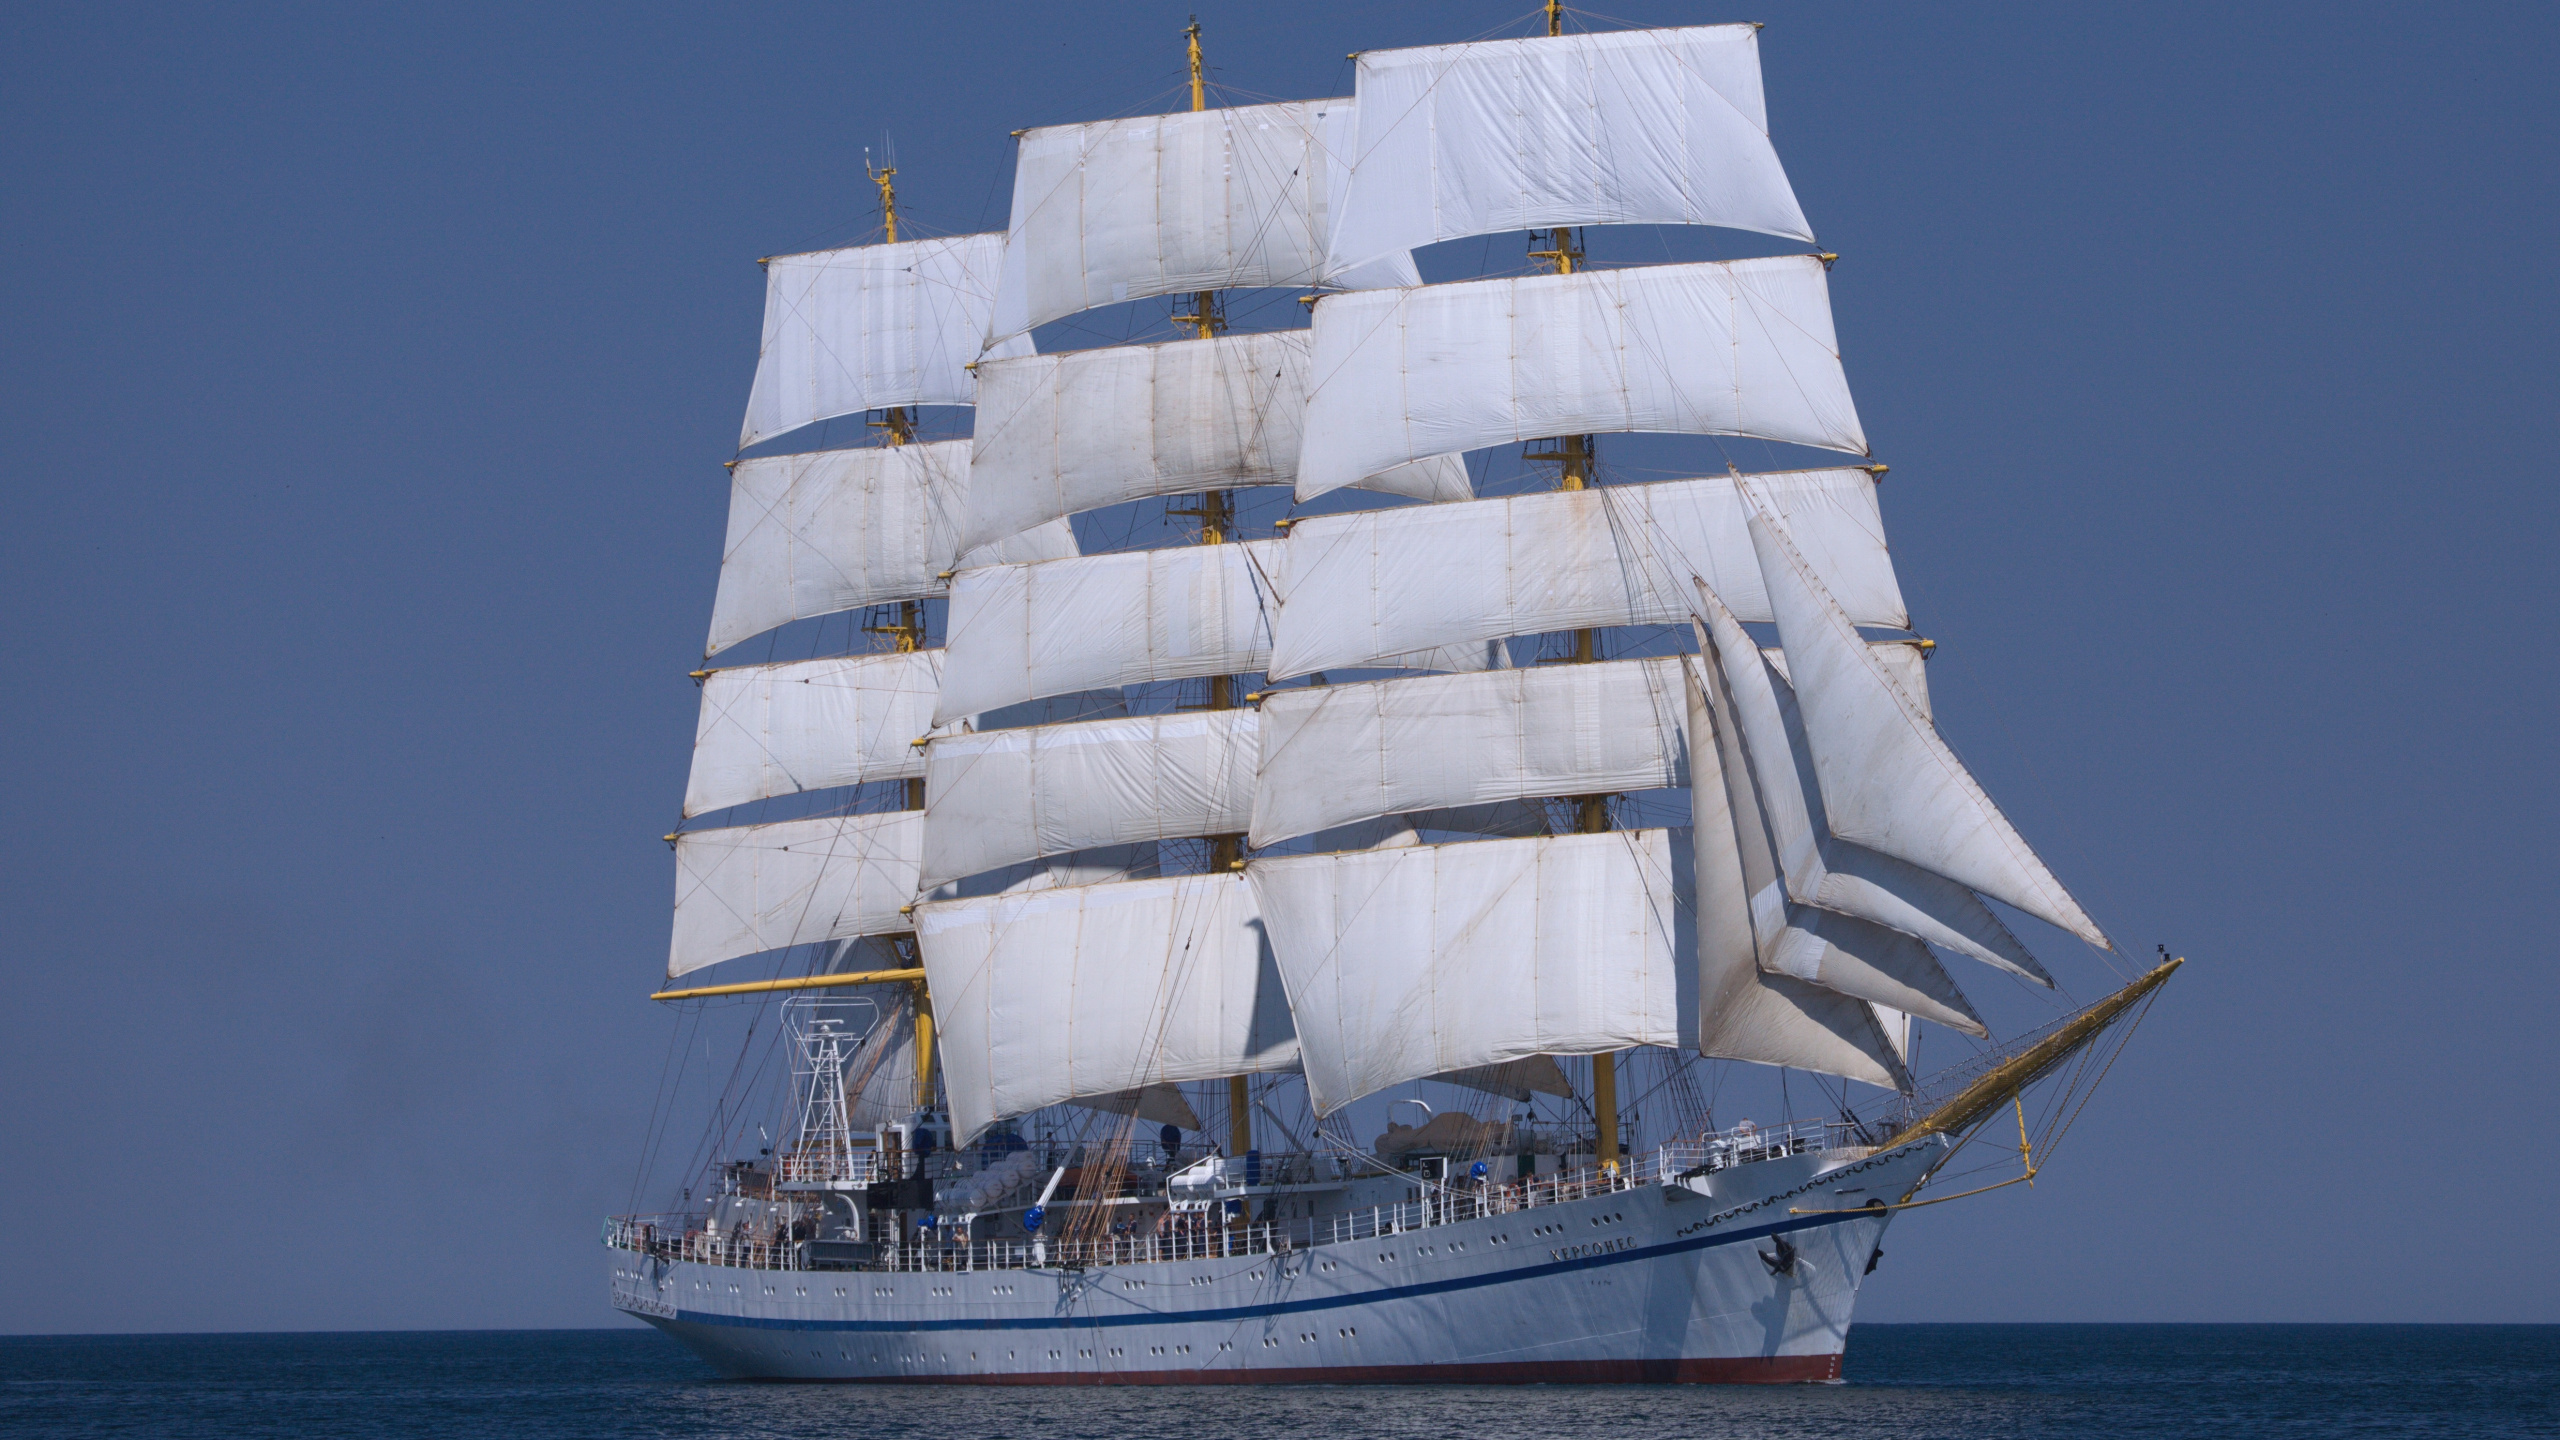 扬帆, 录像, 高船, Barquentine, 三桅帆船 壁纸 2560x1440 允许